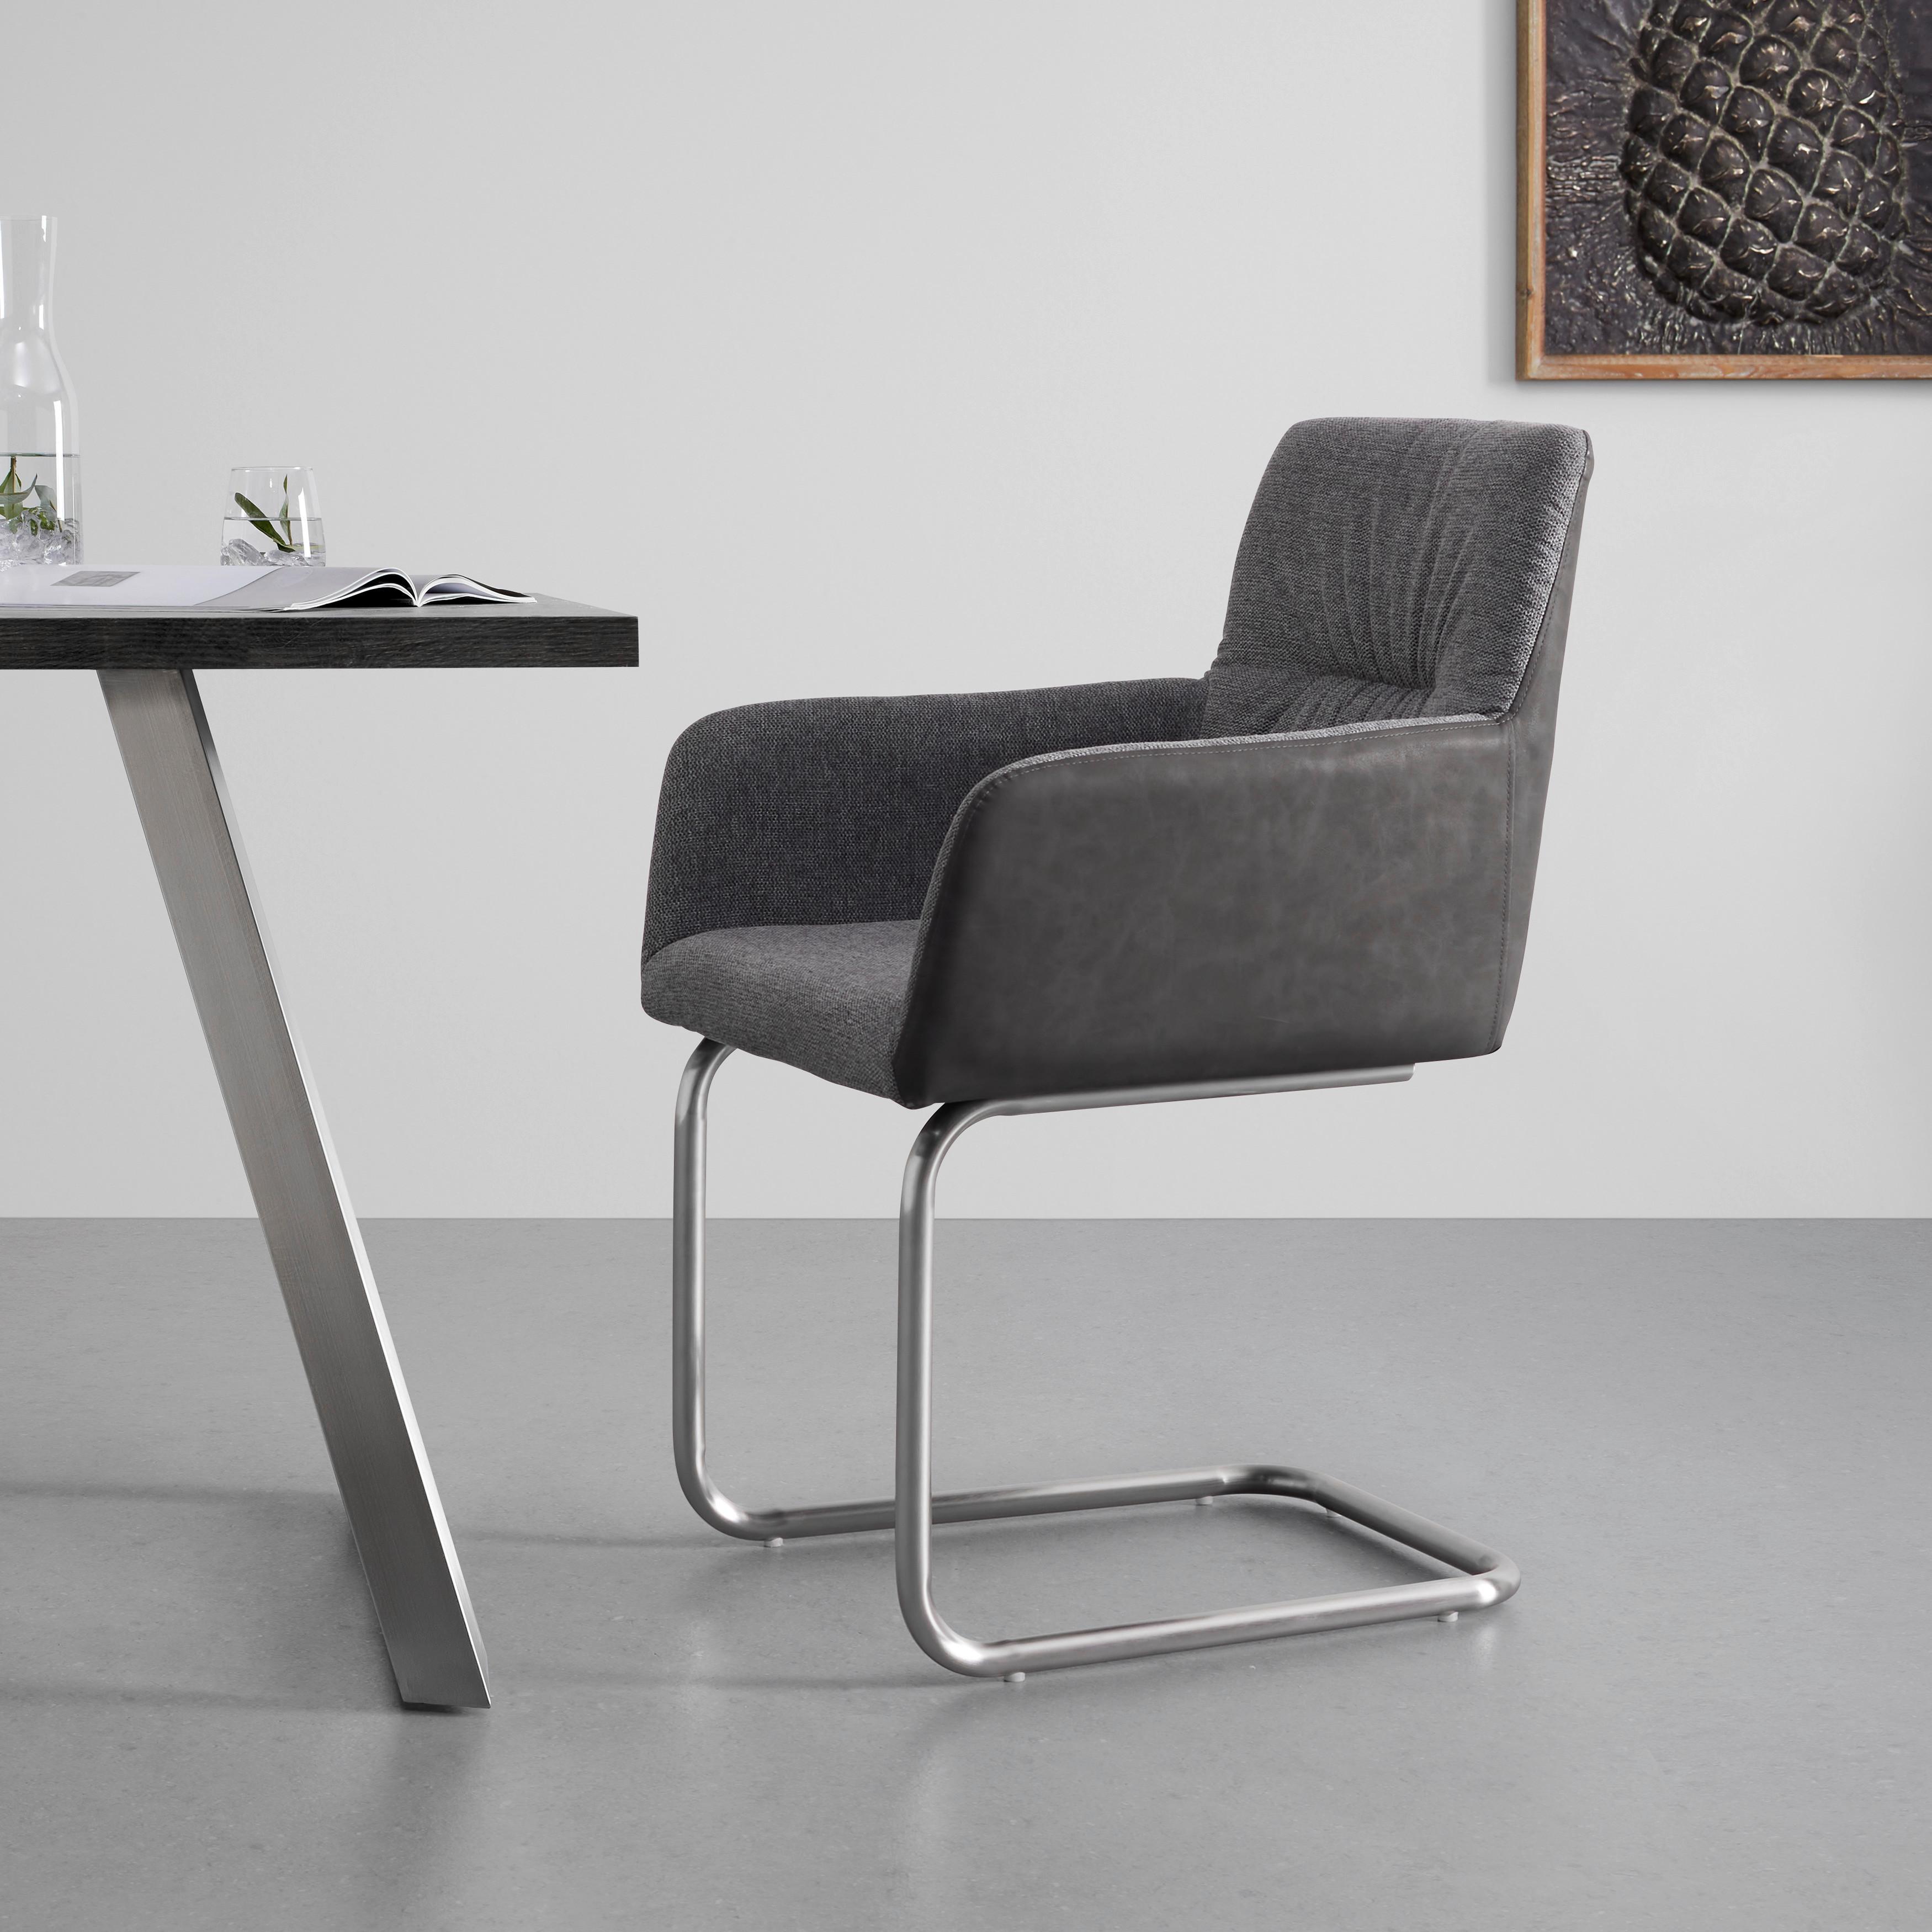 Houpací Židle Enja Tmavěšedá - tmavě šedá/barvy nerez oceli, Moderní, kov/dřevo (56/86/62cm) - Bessagi Home